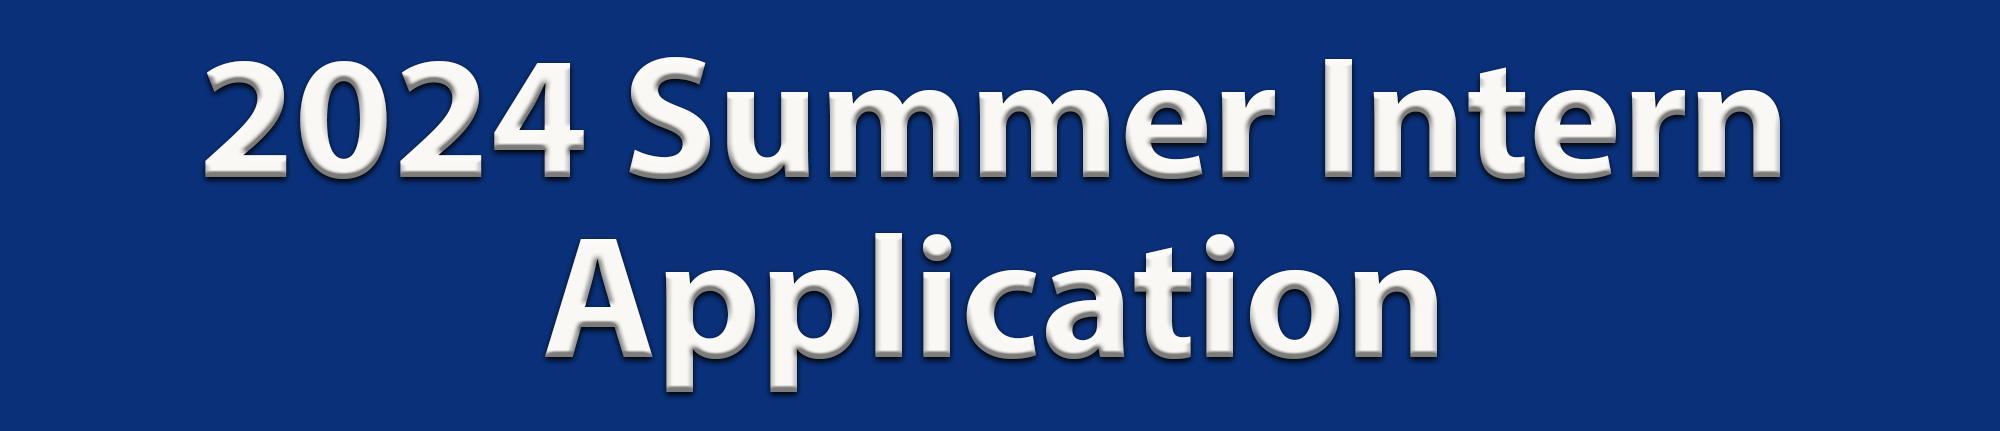 2024 Summer Intern Application